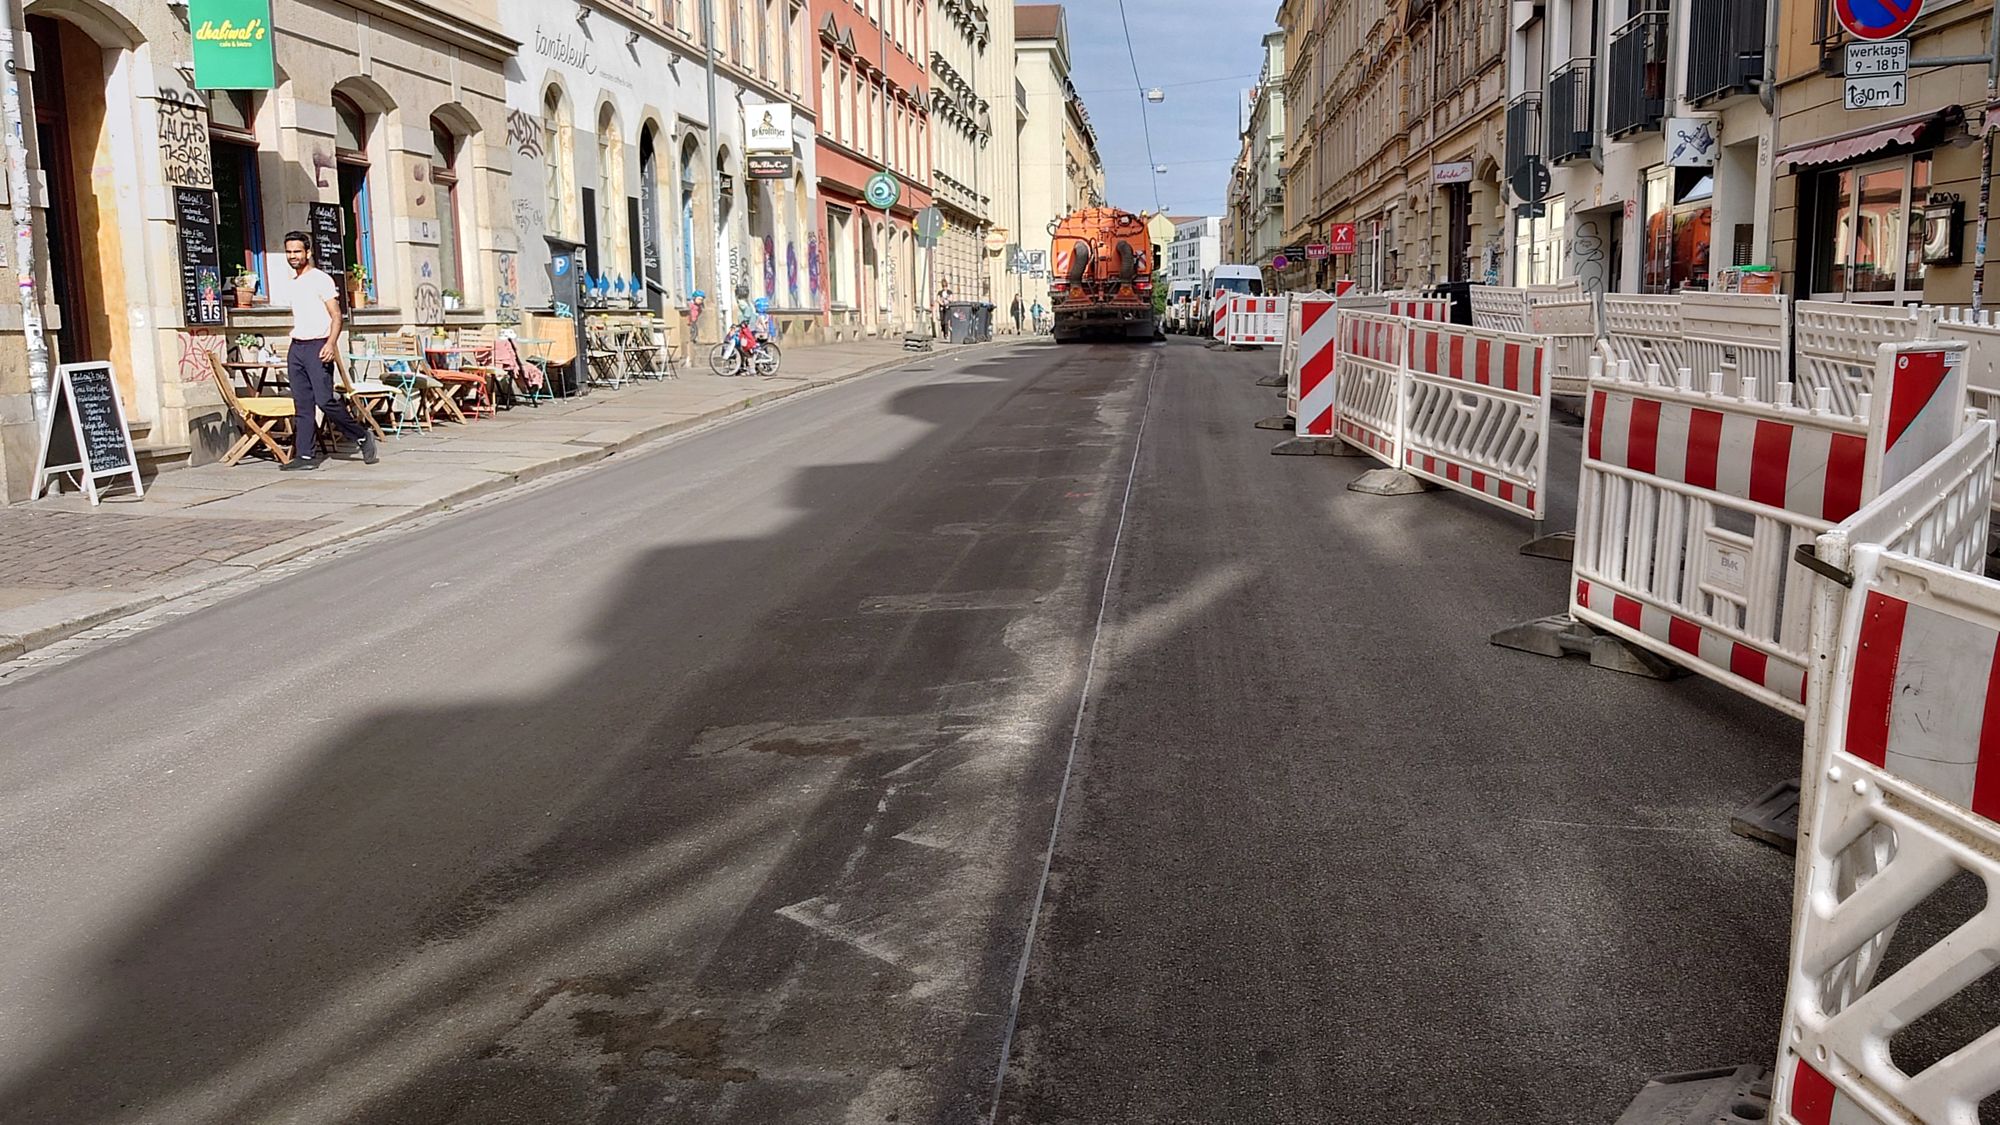 Am Morgen hat die Stadtreinigung die frisch sanierte Straße noch fix geputzt. Foto: Anton Launer